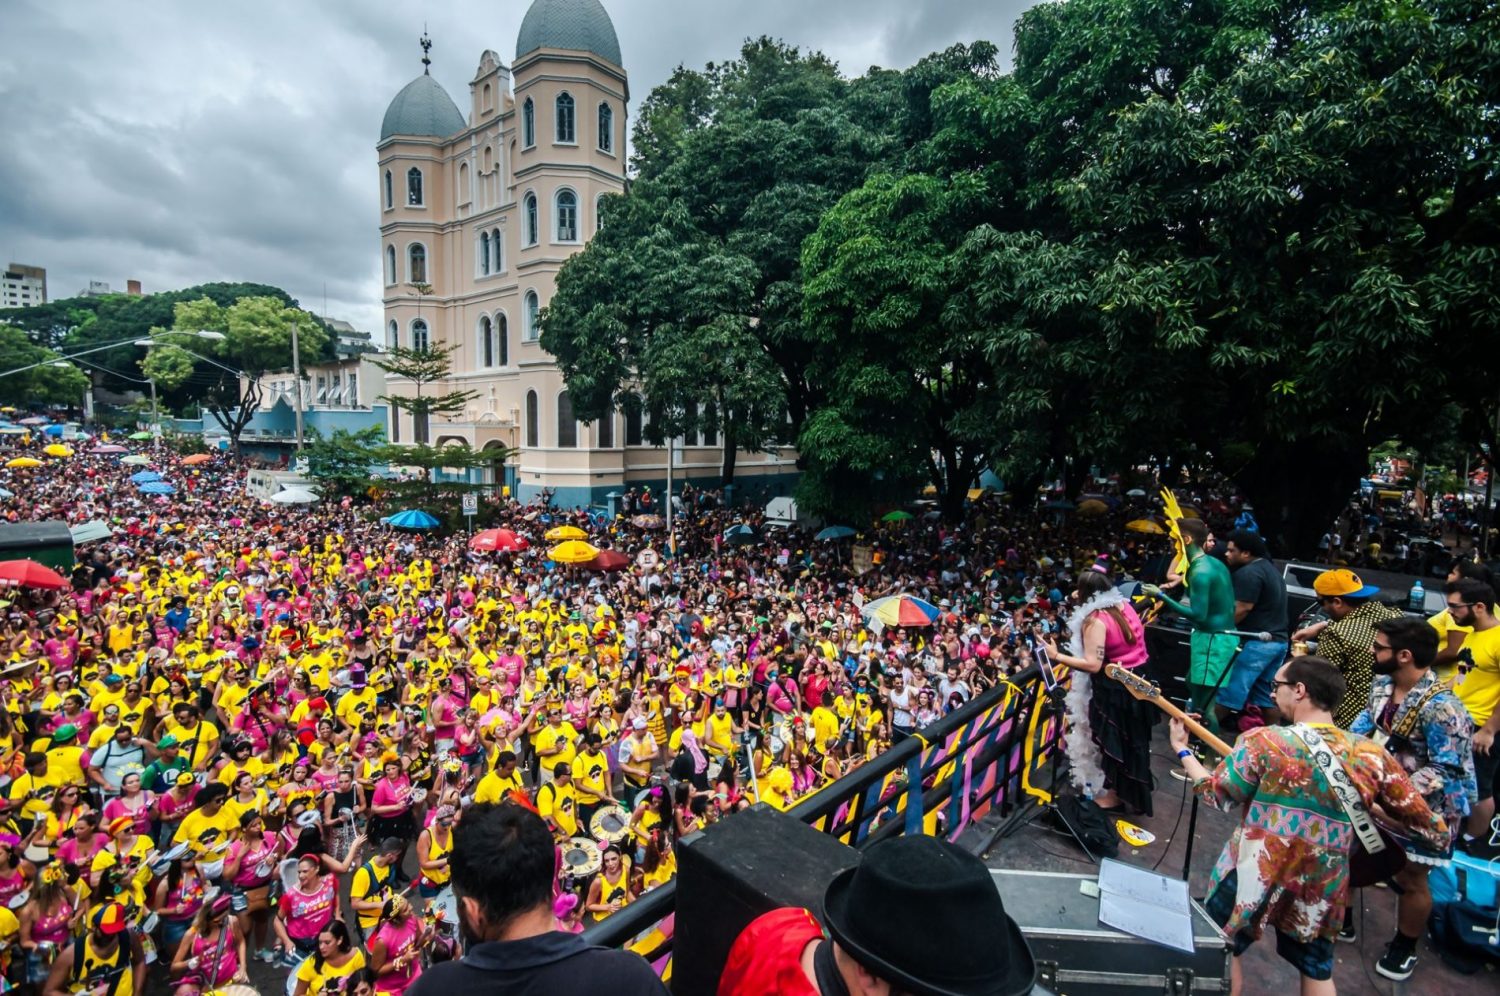 O Bloco Beiço do Wando, em Belo Horizonte: enquanto o Rio assiste a um retrocesso, o Carnaval cresce na capital mineira. Foto Danilo Candombe